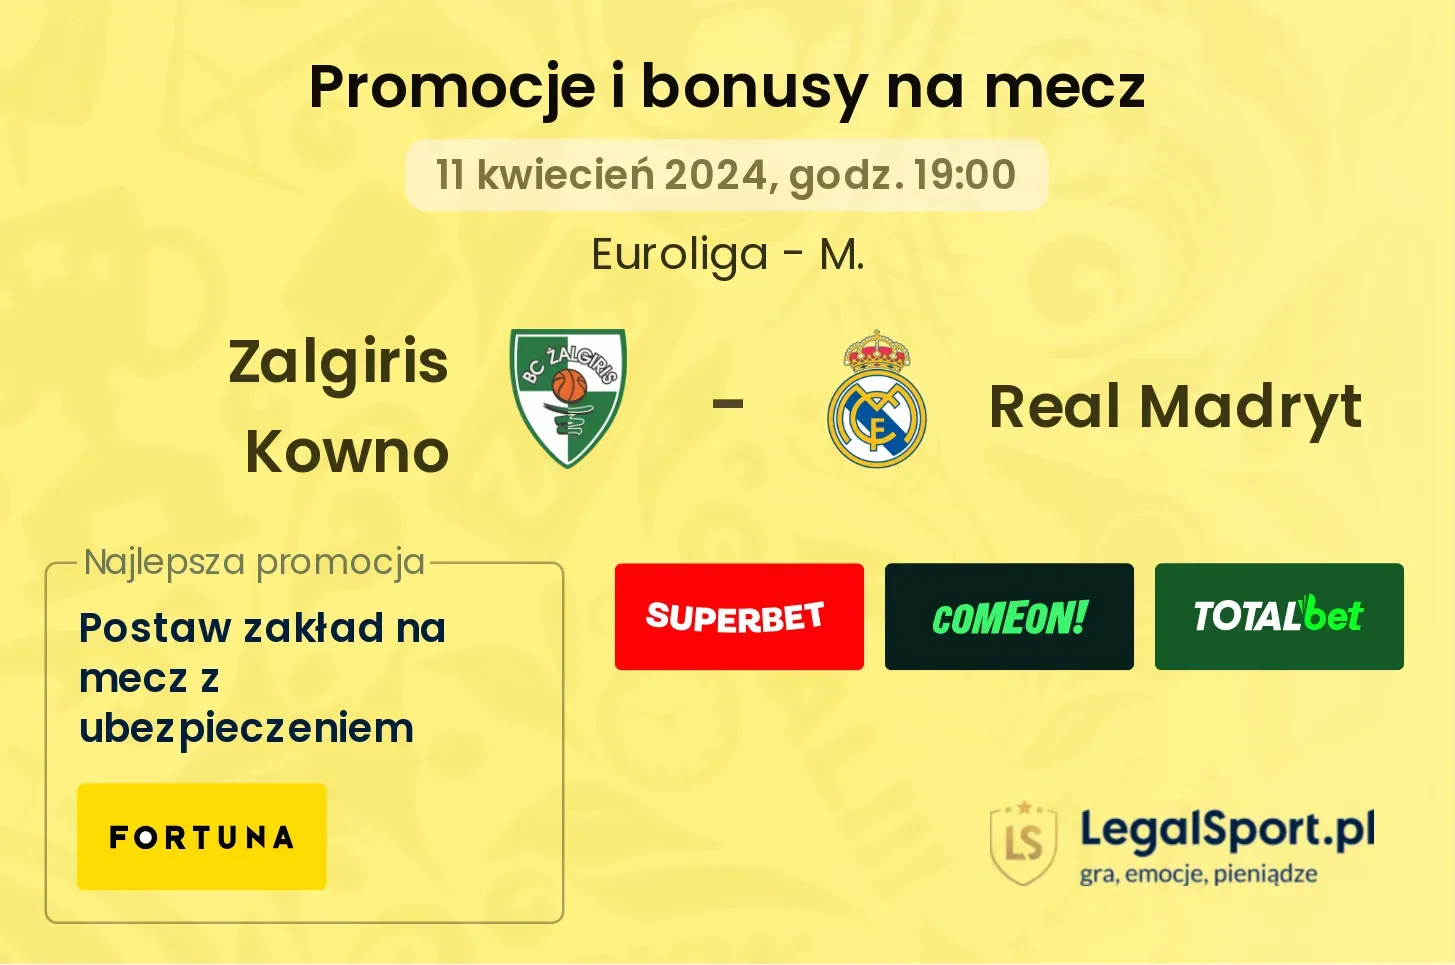 Zalgiris Kowno - Real Madryt promocje bonusy na mecz